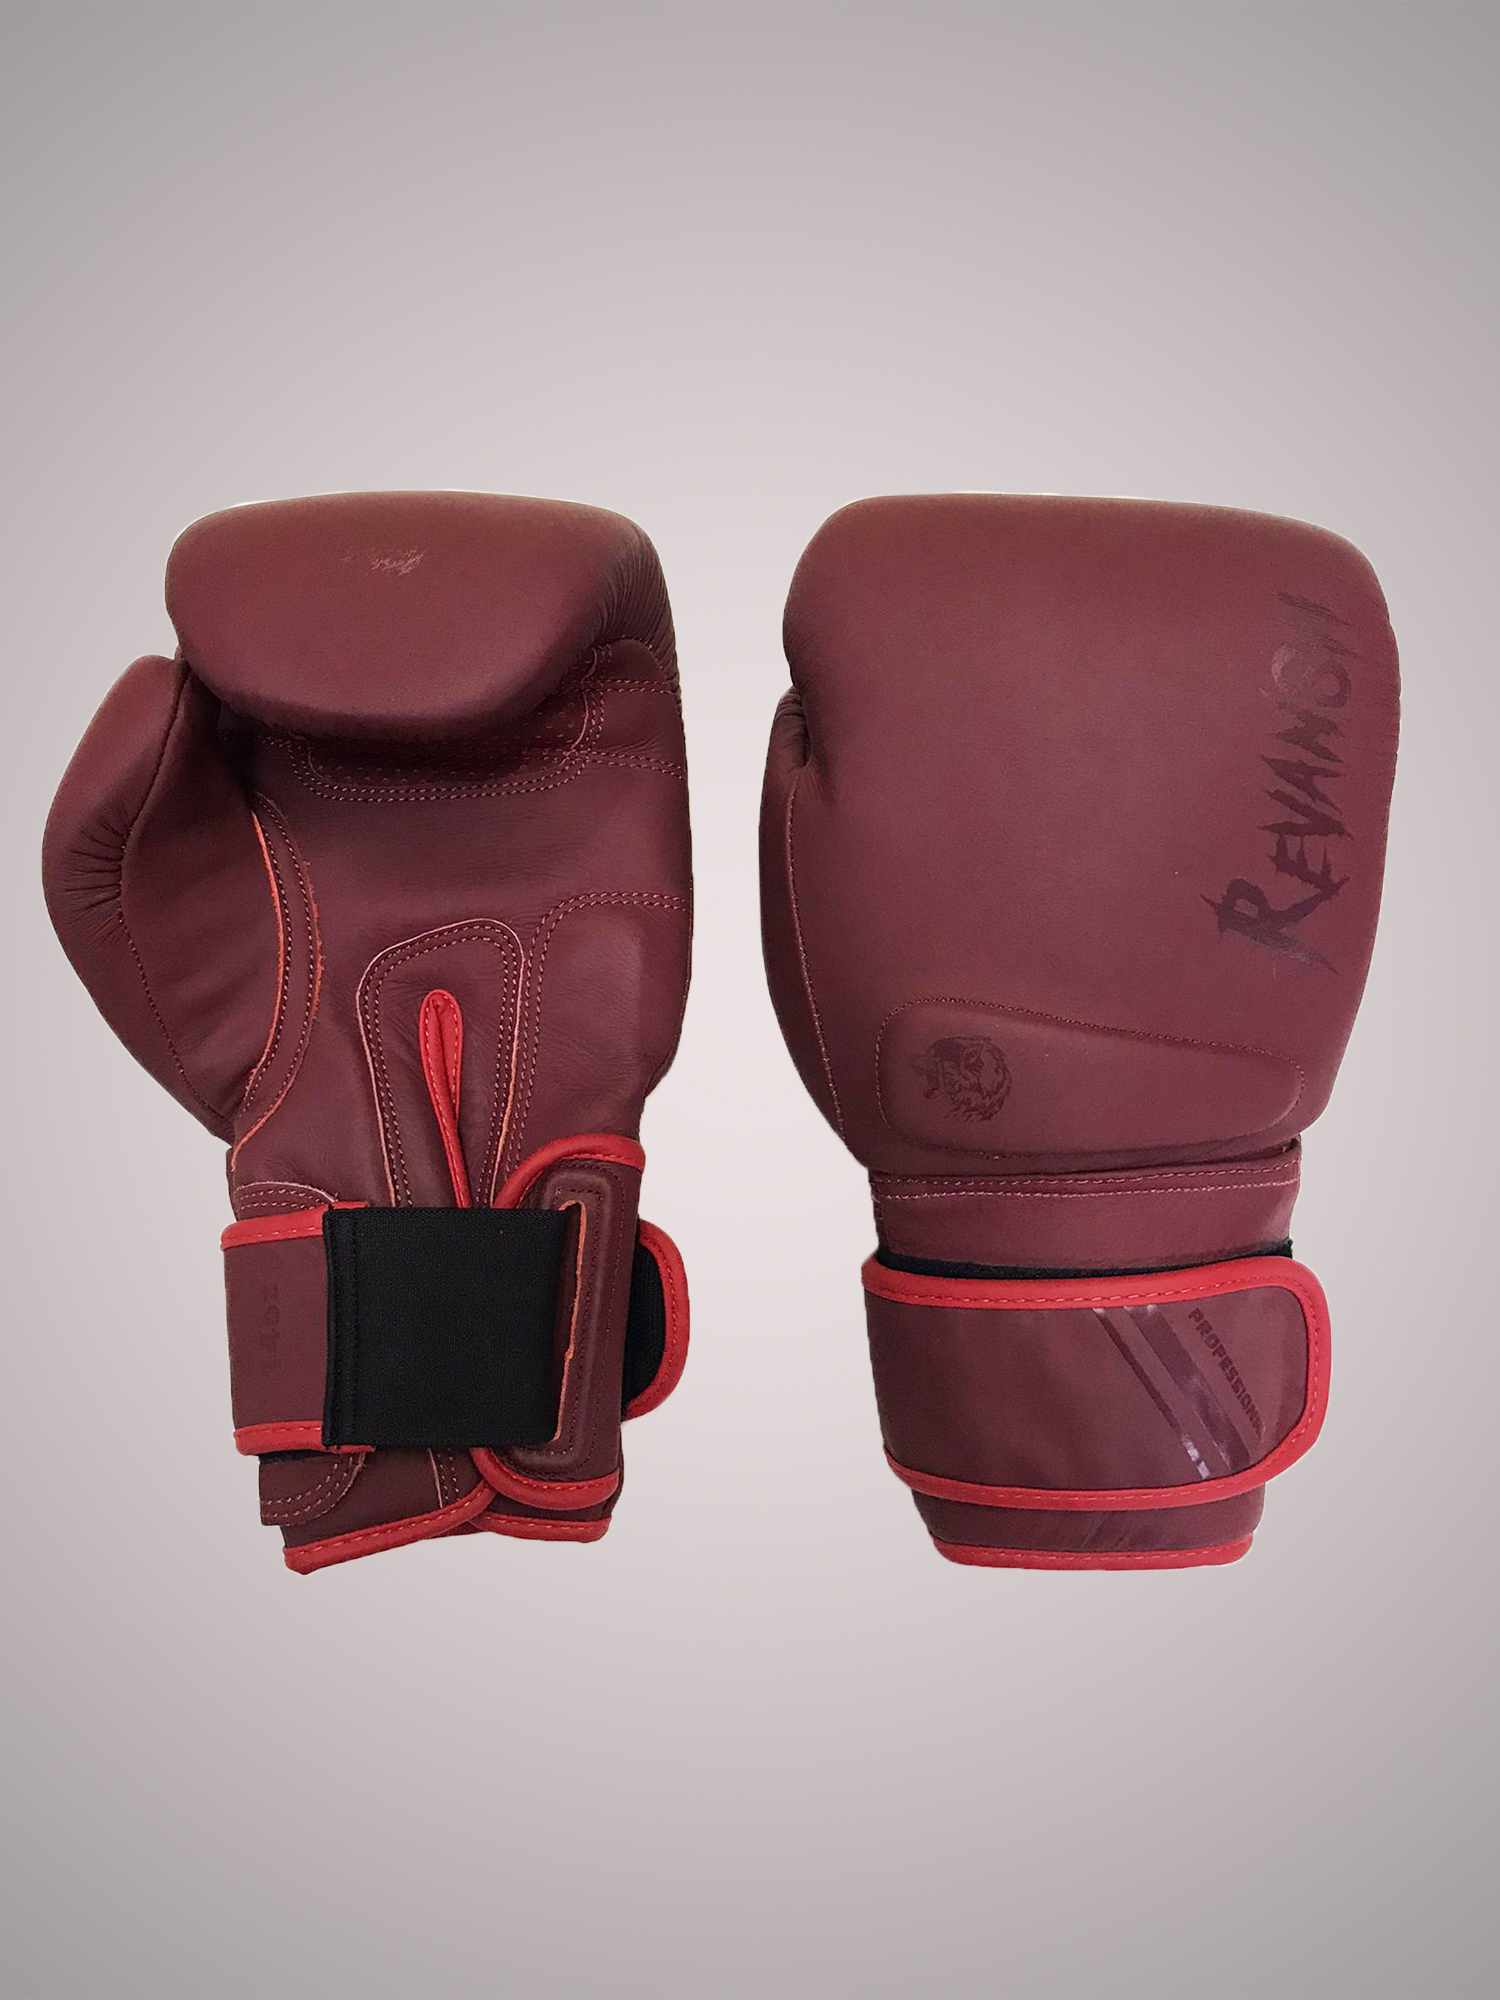 Боксерские Перчатки REVANSH PRO MATE BORDO 16 унций из натуральной кожи